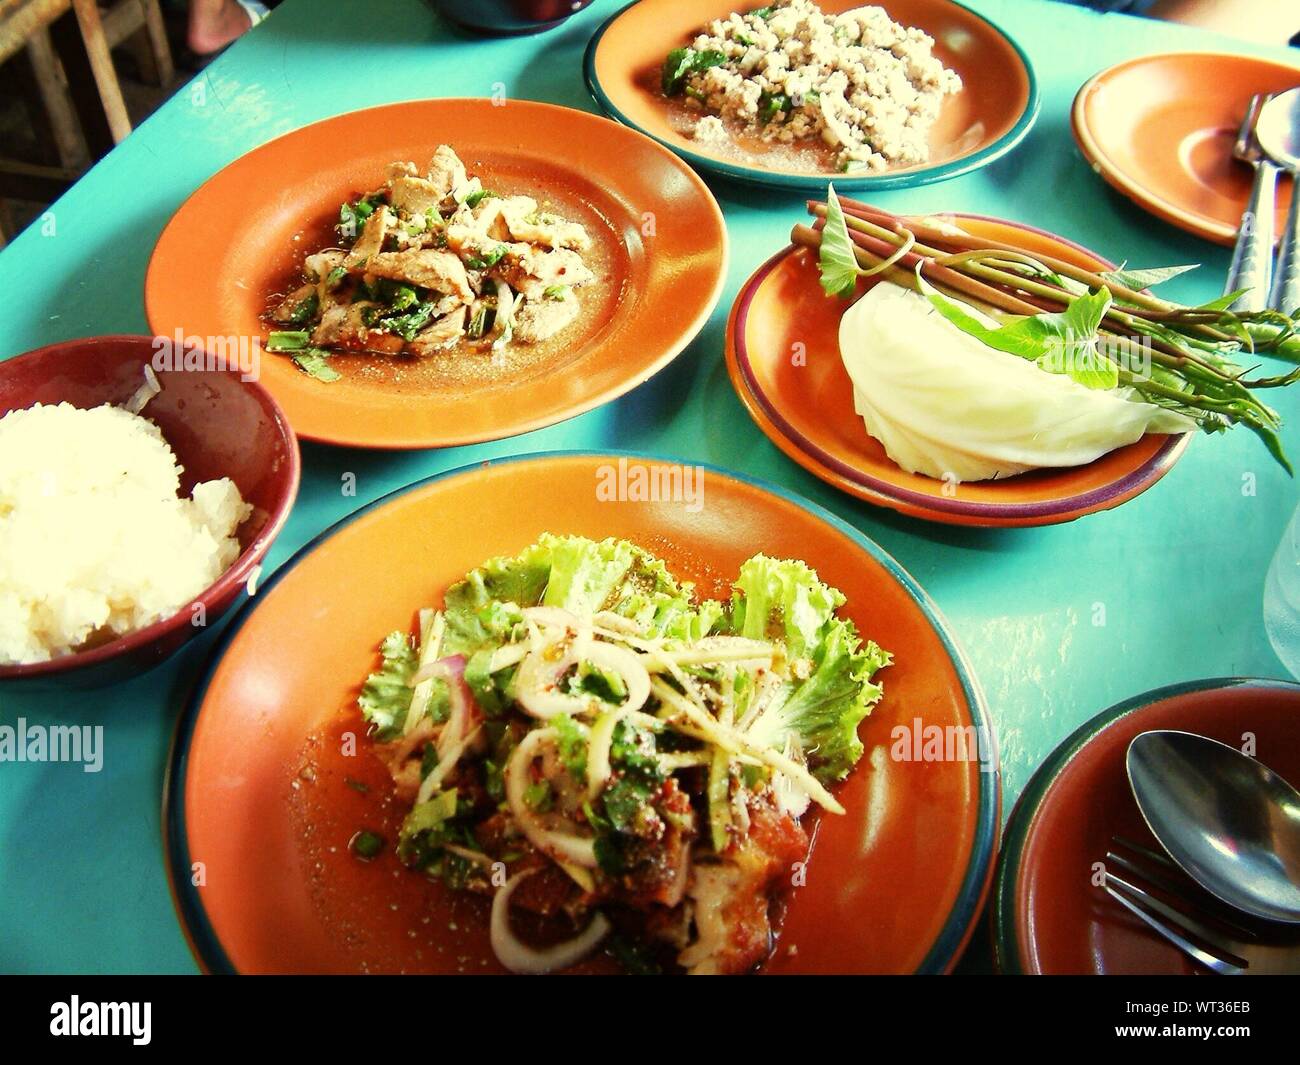 La cuisine thaï servi sur table au restaurant Banque D'Images